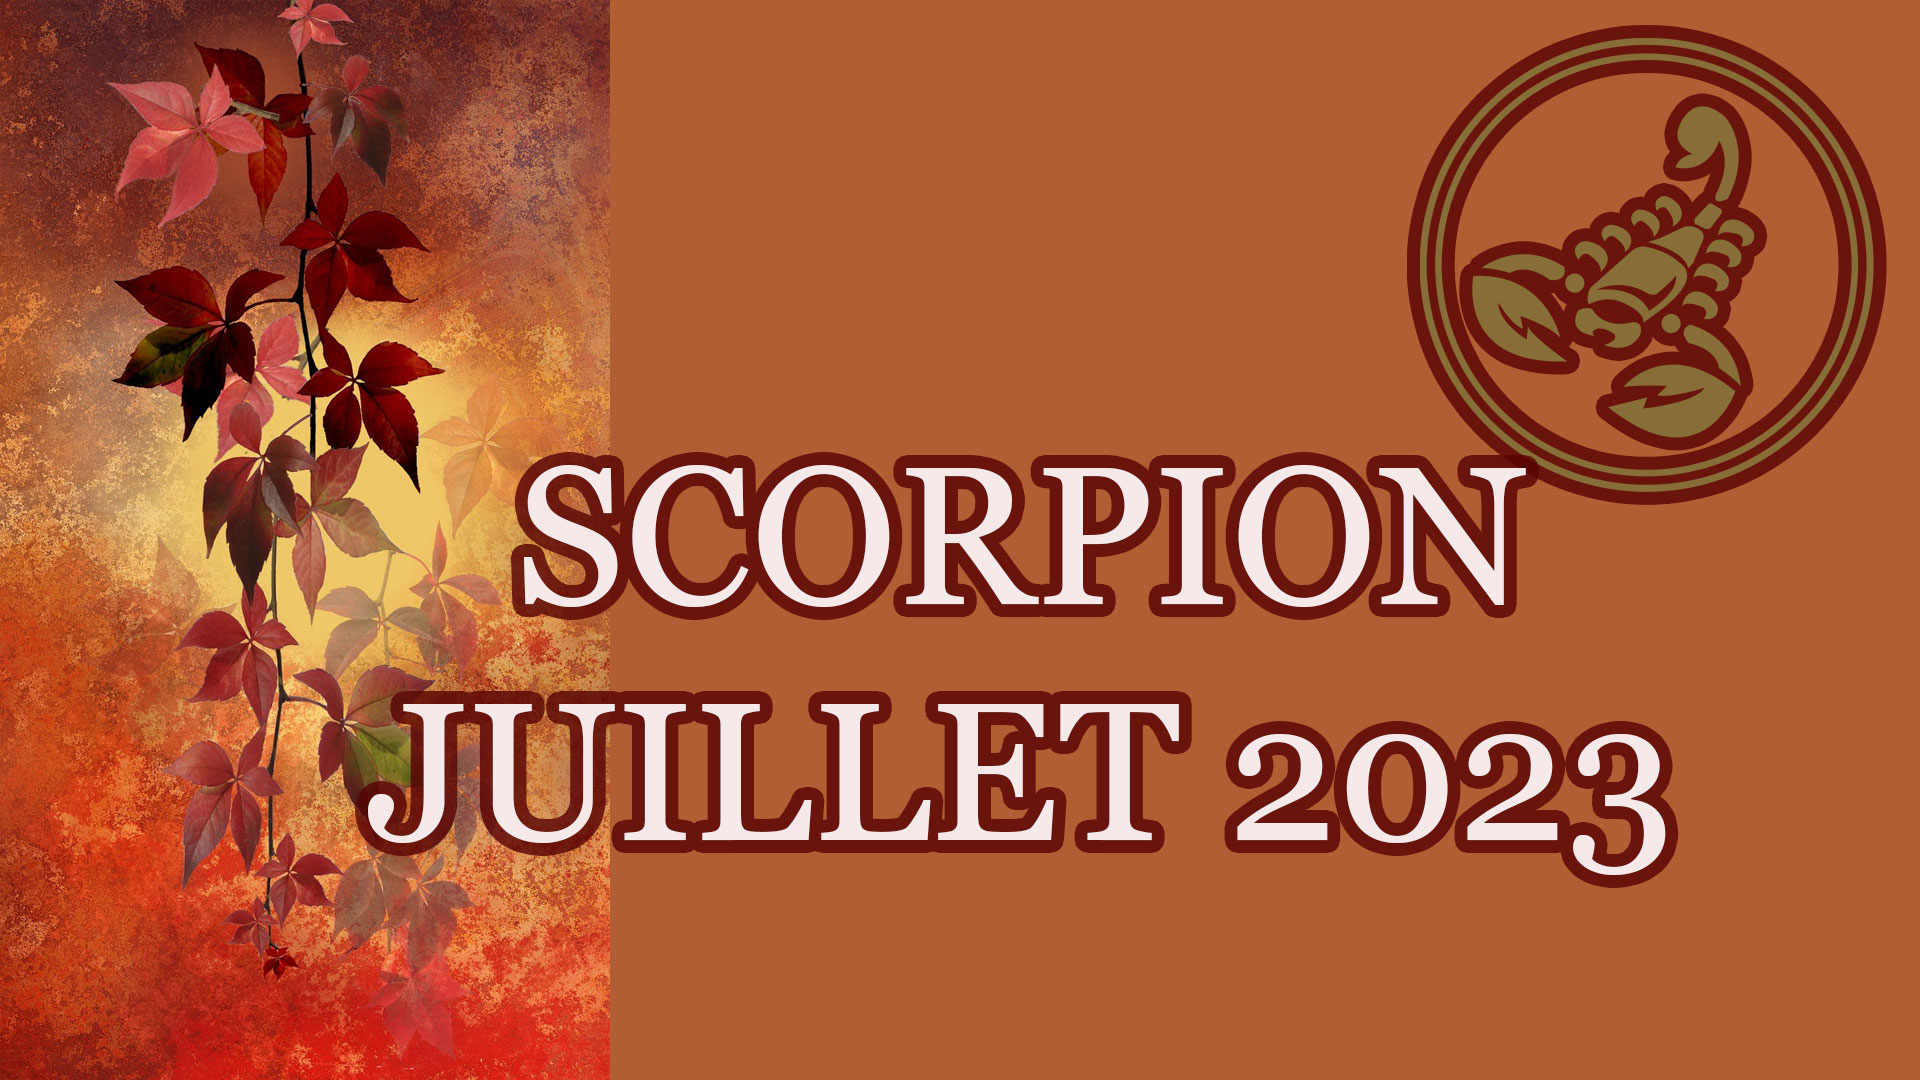 scorpion juillet 2023